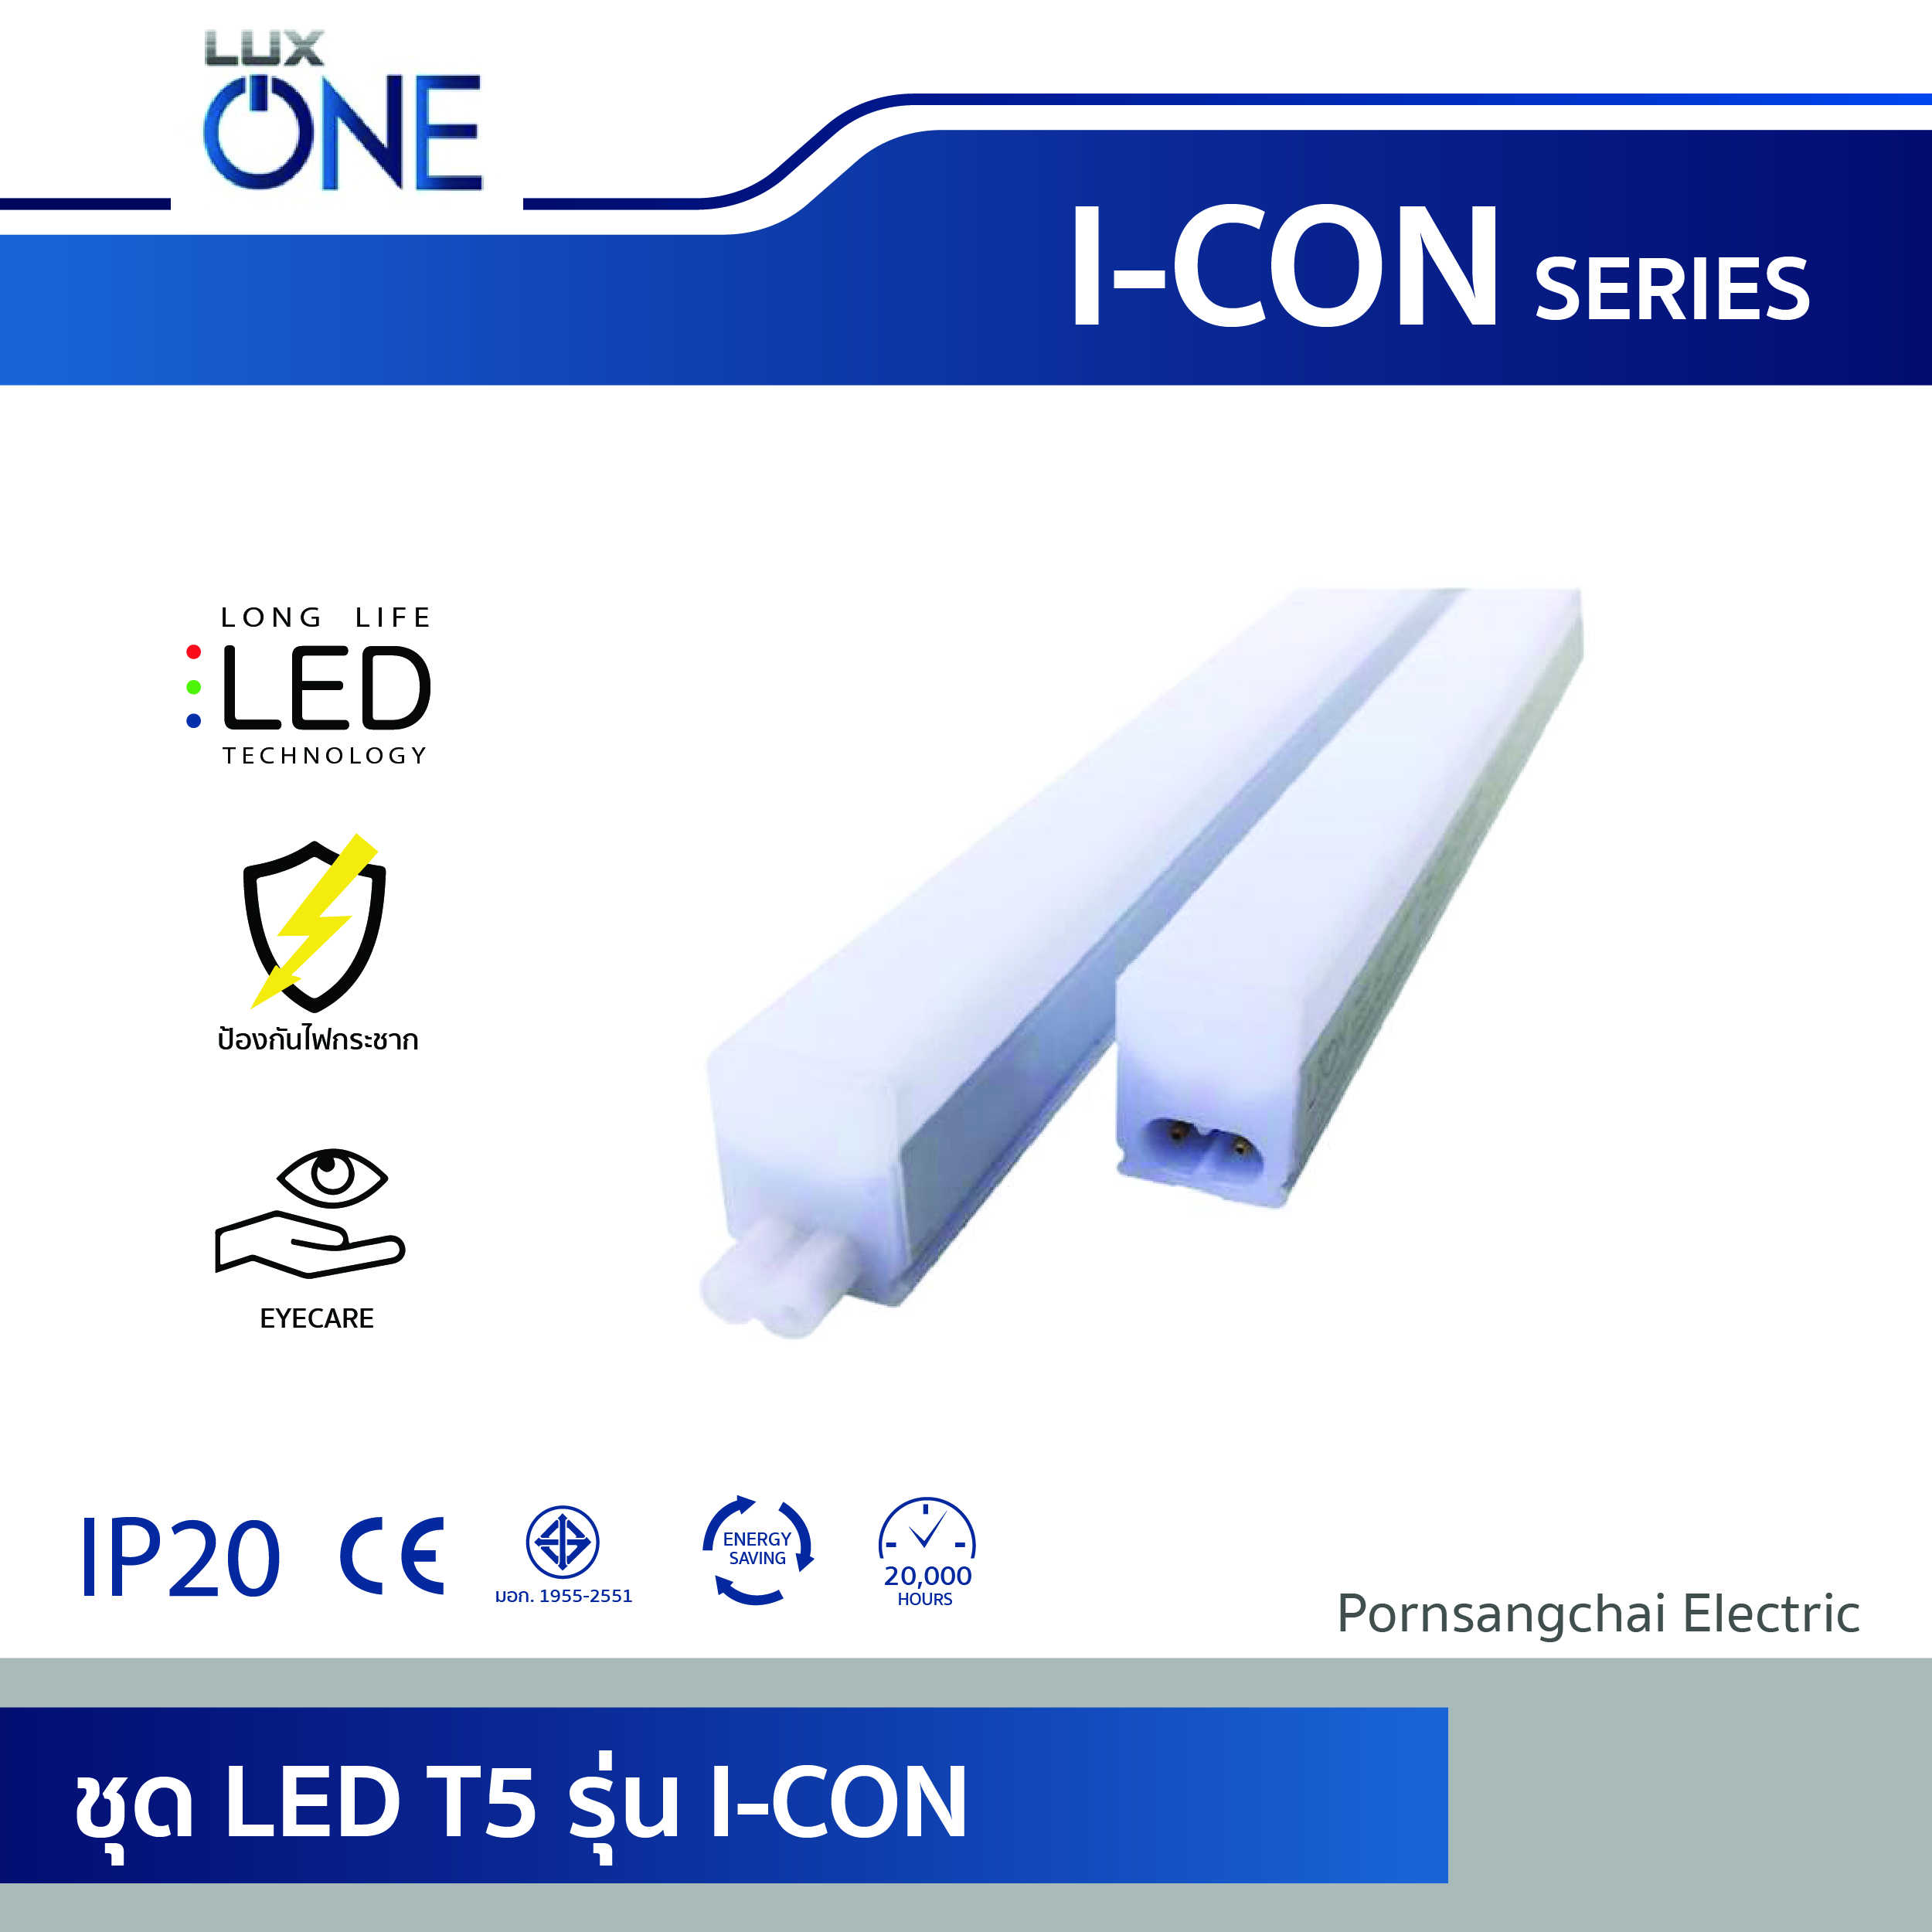 LUXONE ชุดเซ็ท T5 LED รุ่น I-CON